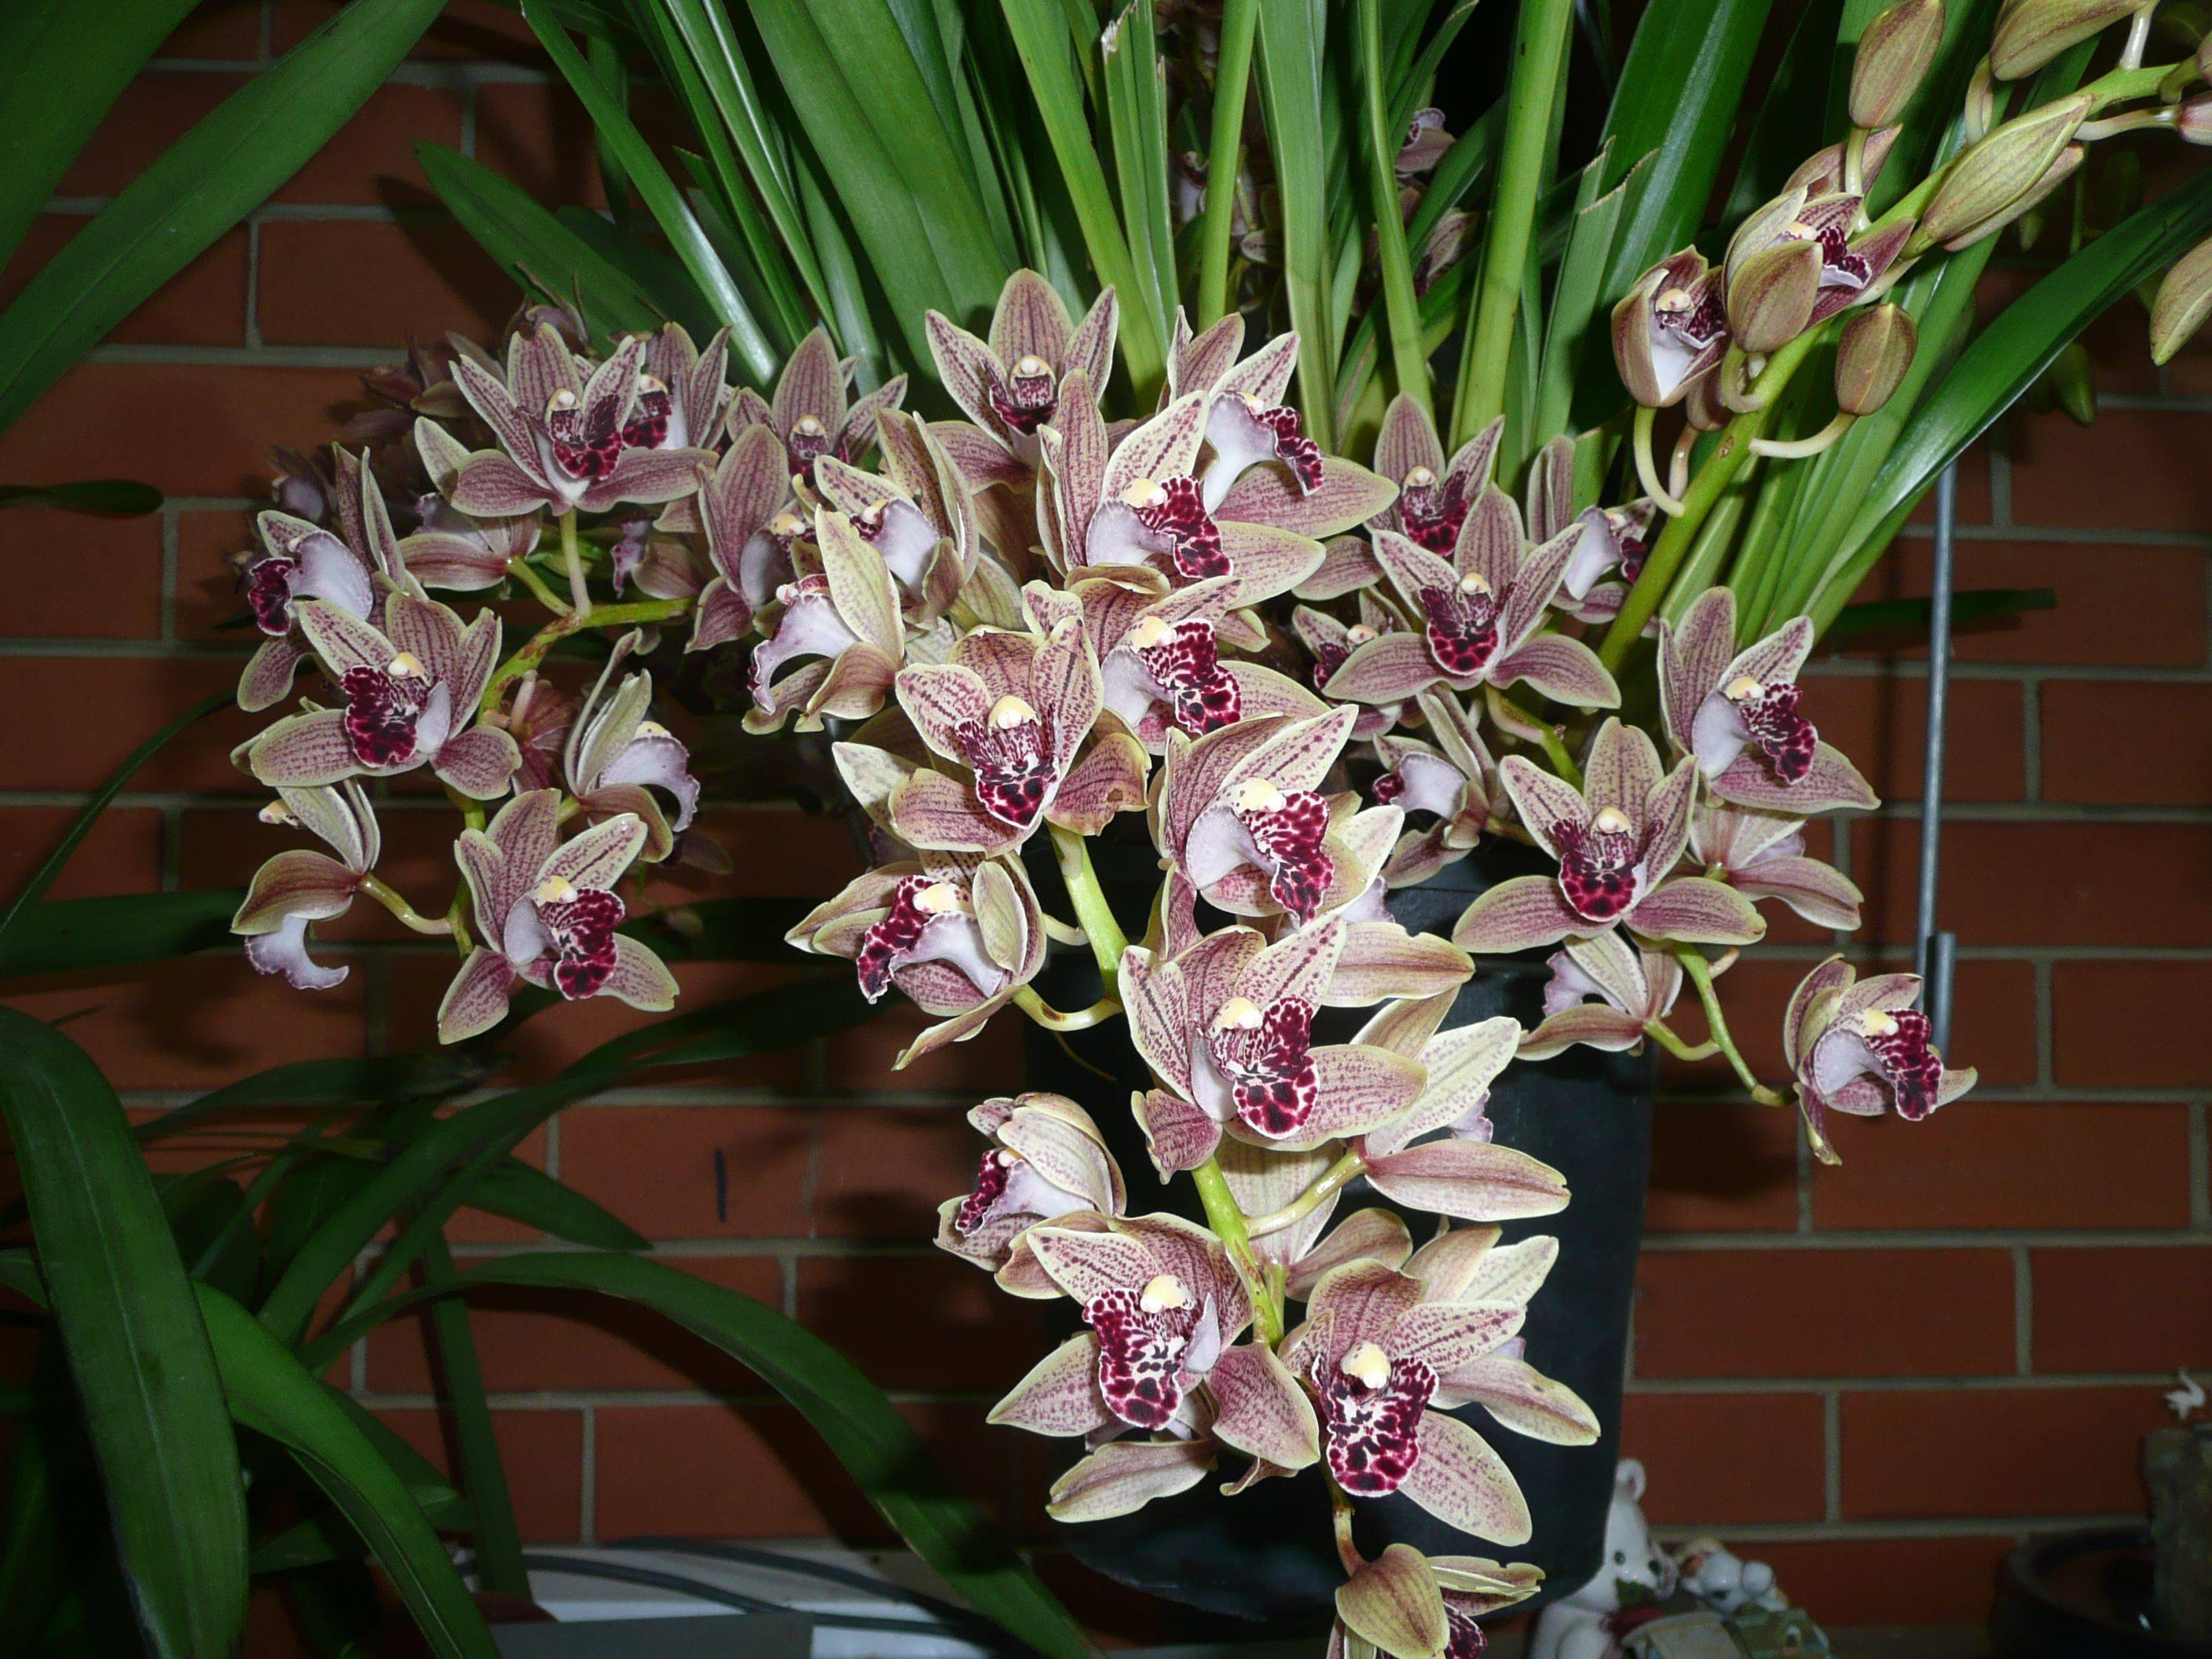 Орхидея цимбидиум в горшке: какие есть виды и подсорта, их названия с фото, все об уходе в домашних условиях, в том числе чтобы из стрелочки появился цветок selo.guru — интернет портал о сельском хозяйстве